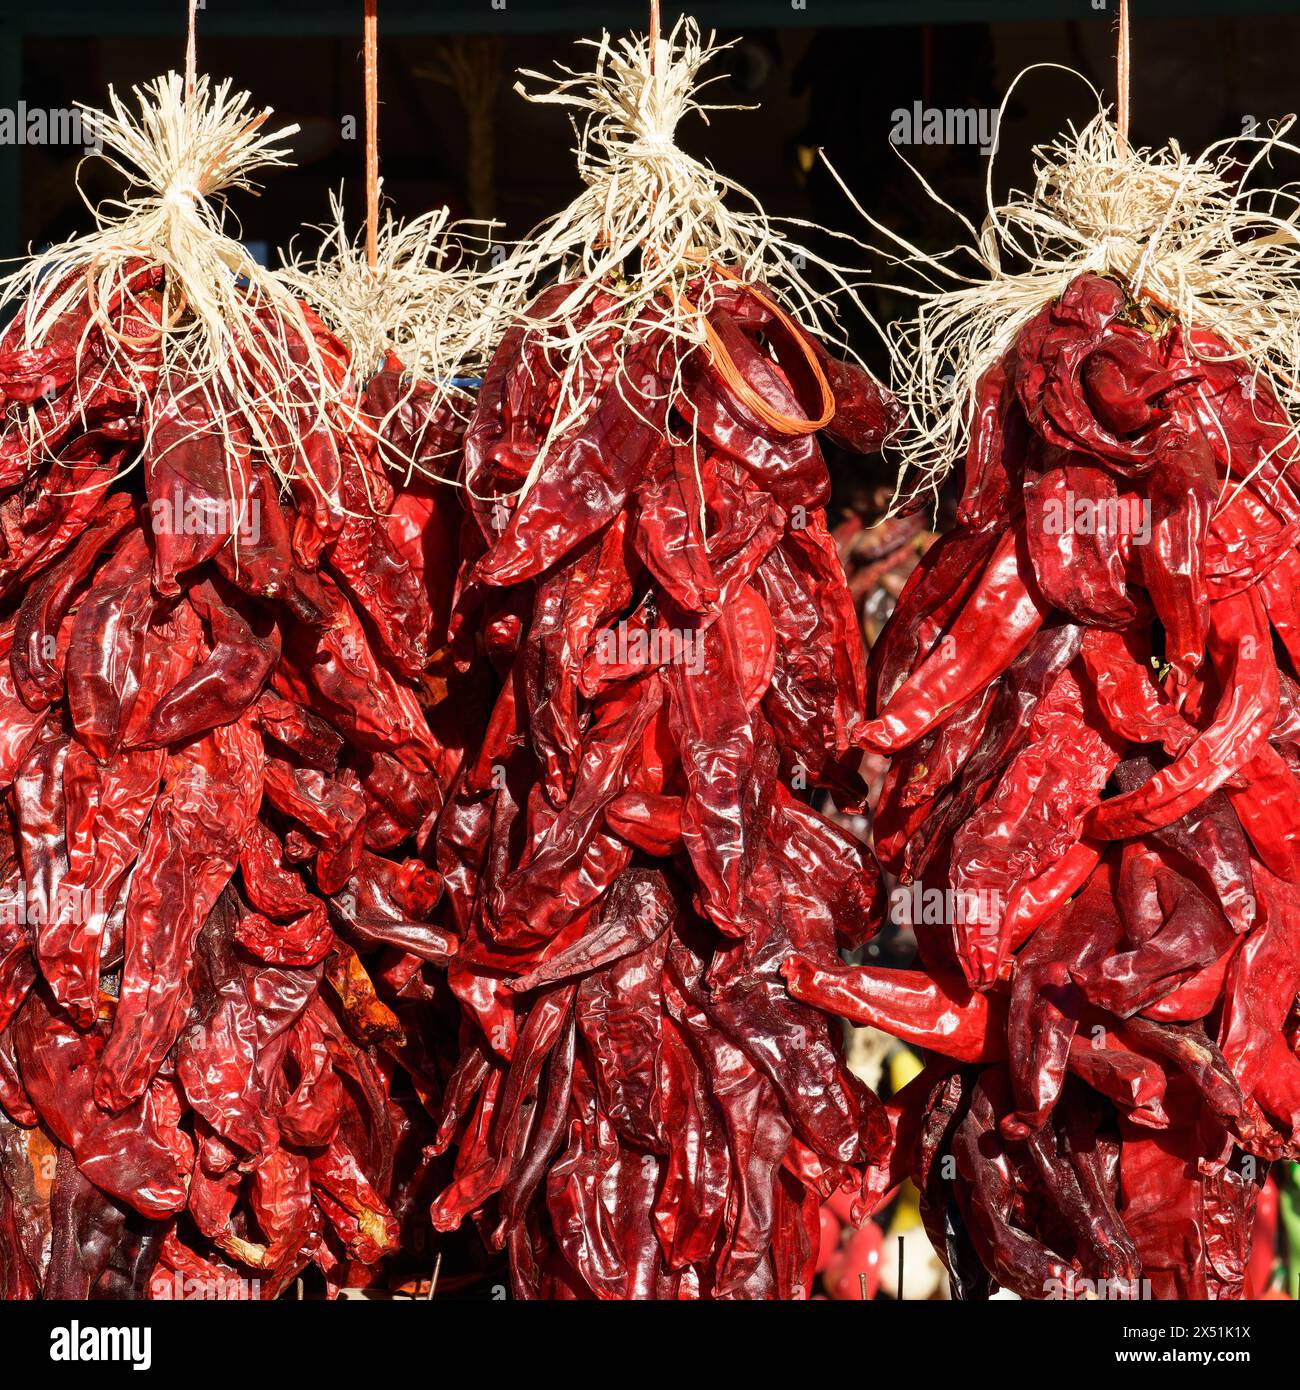 Le ristras cilene di peperoni rossi appese in grappoli al sole. Ristras, spesso usato per la decorazione, si dice che porti buona salute e buona fortuna. Foto Stock